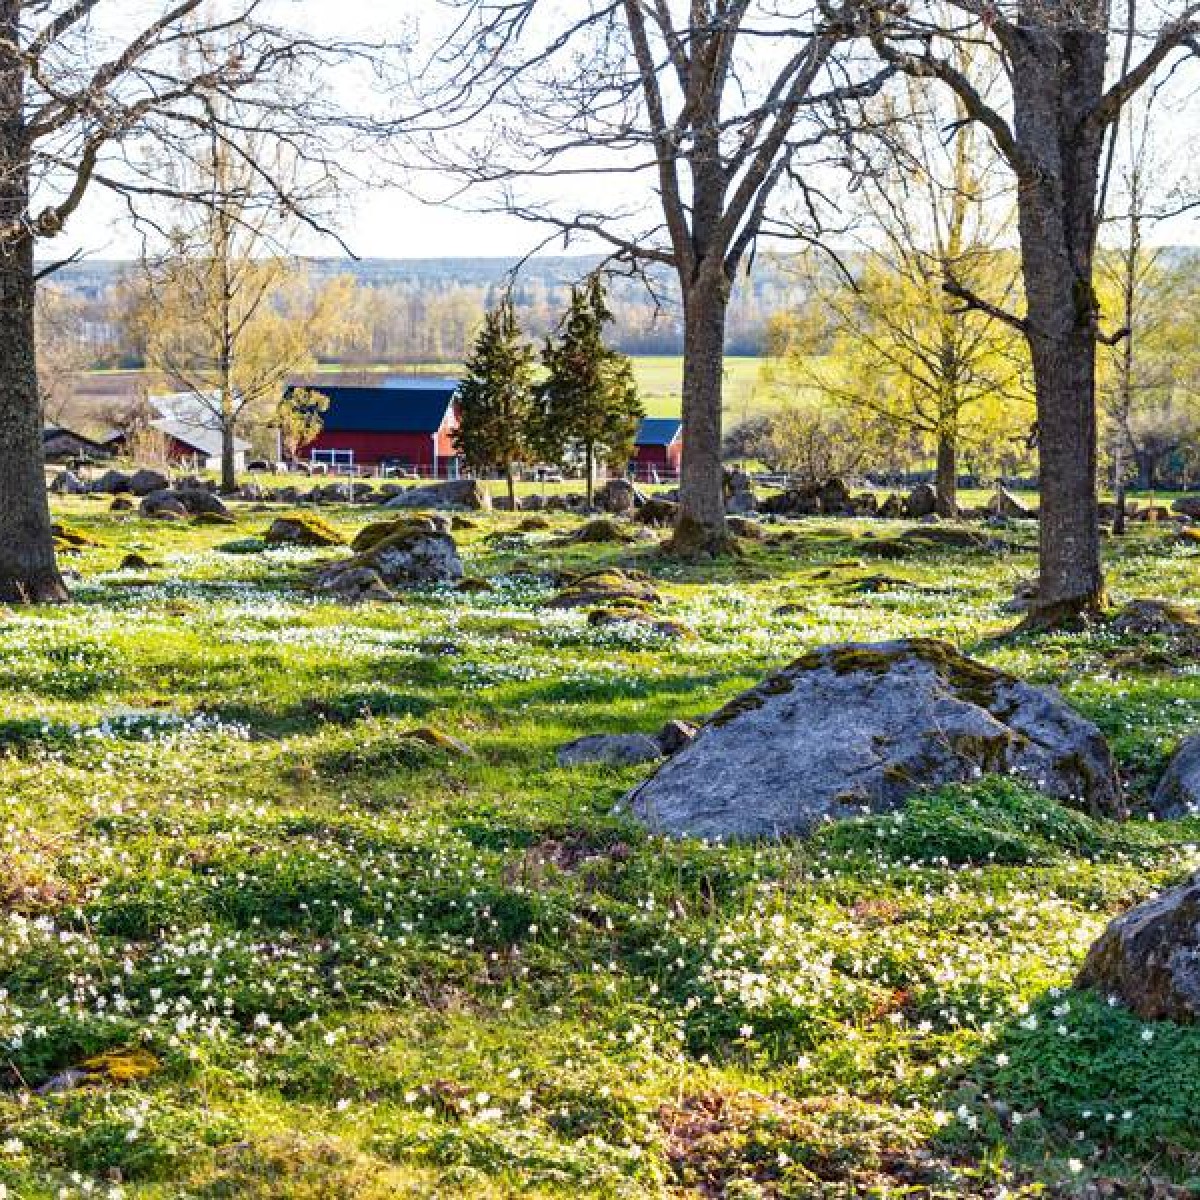 Things to do in spring in Sweden 🍃💗 visitsweden.com/about-sweden/s… 📷 1. Michael Jönsson/Scandinav Bildbyrå/imagebank.sweden.se 2. Tuukka Ervasti/imagebank.sweden.se 3. Roger Borgelid/vastsverige.com 4. Thomas Adolfsén/Scandinav Bildbyrå/imagebank.sweden.se